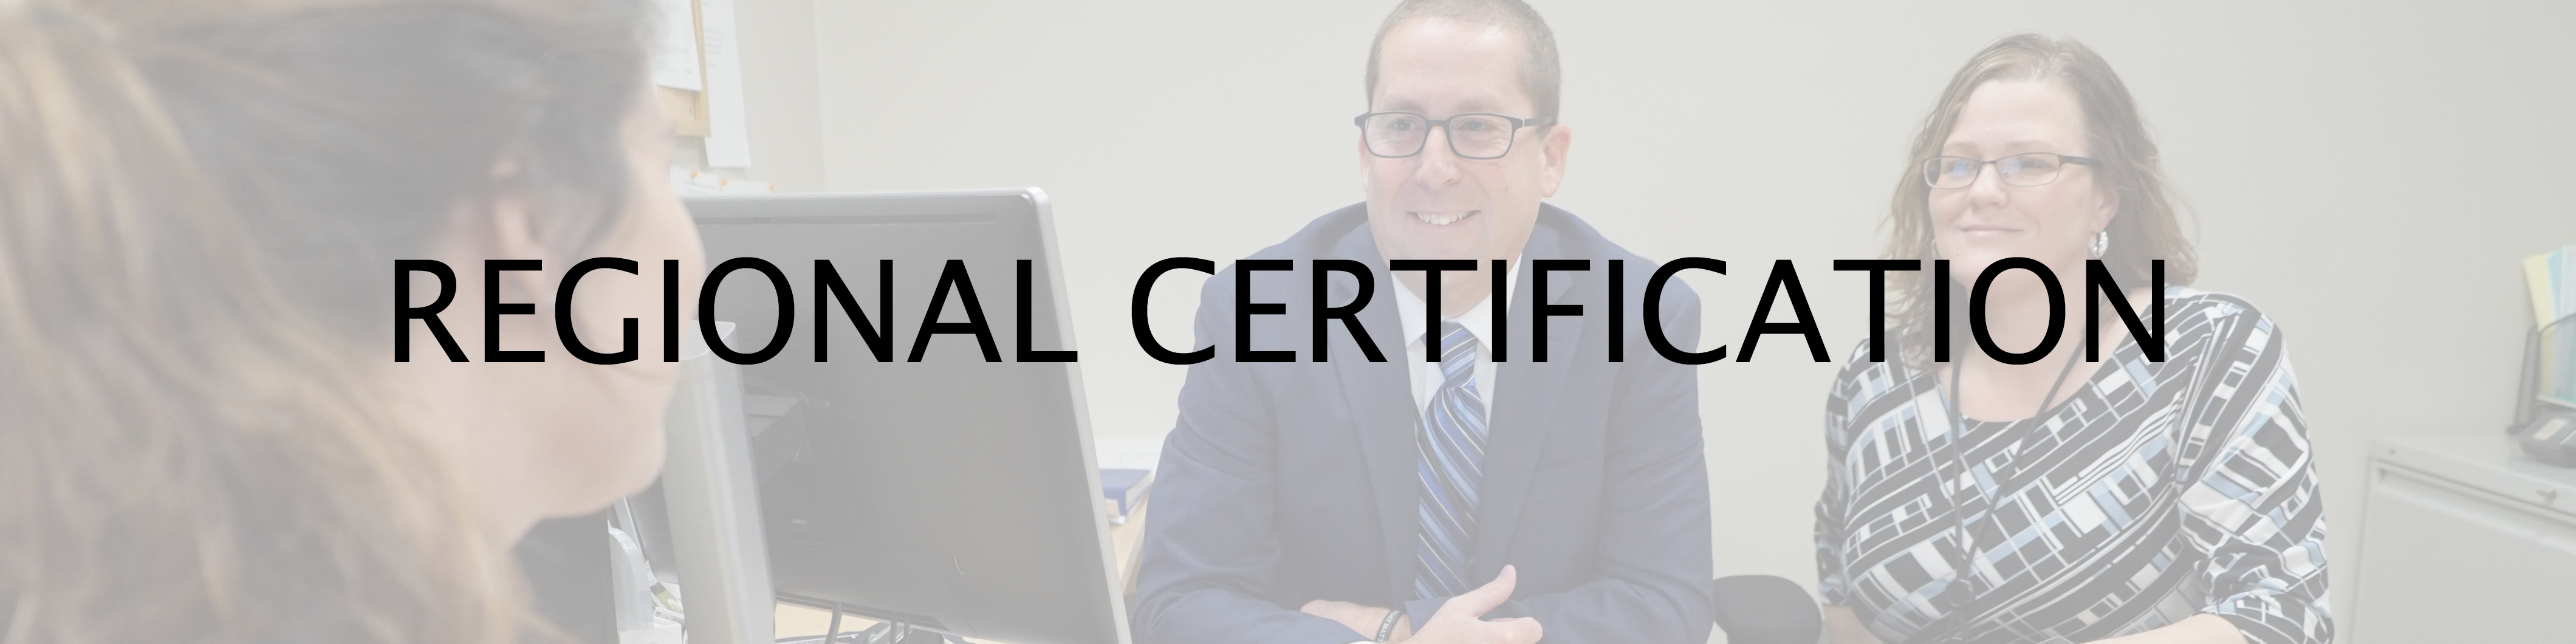 Regional Certification 